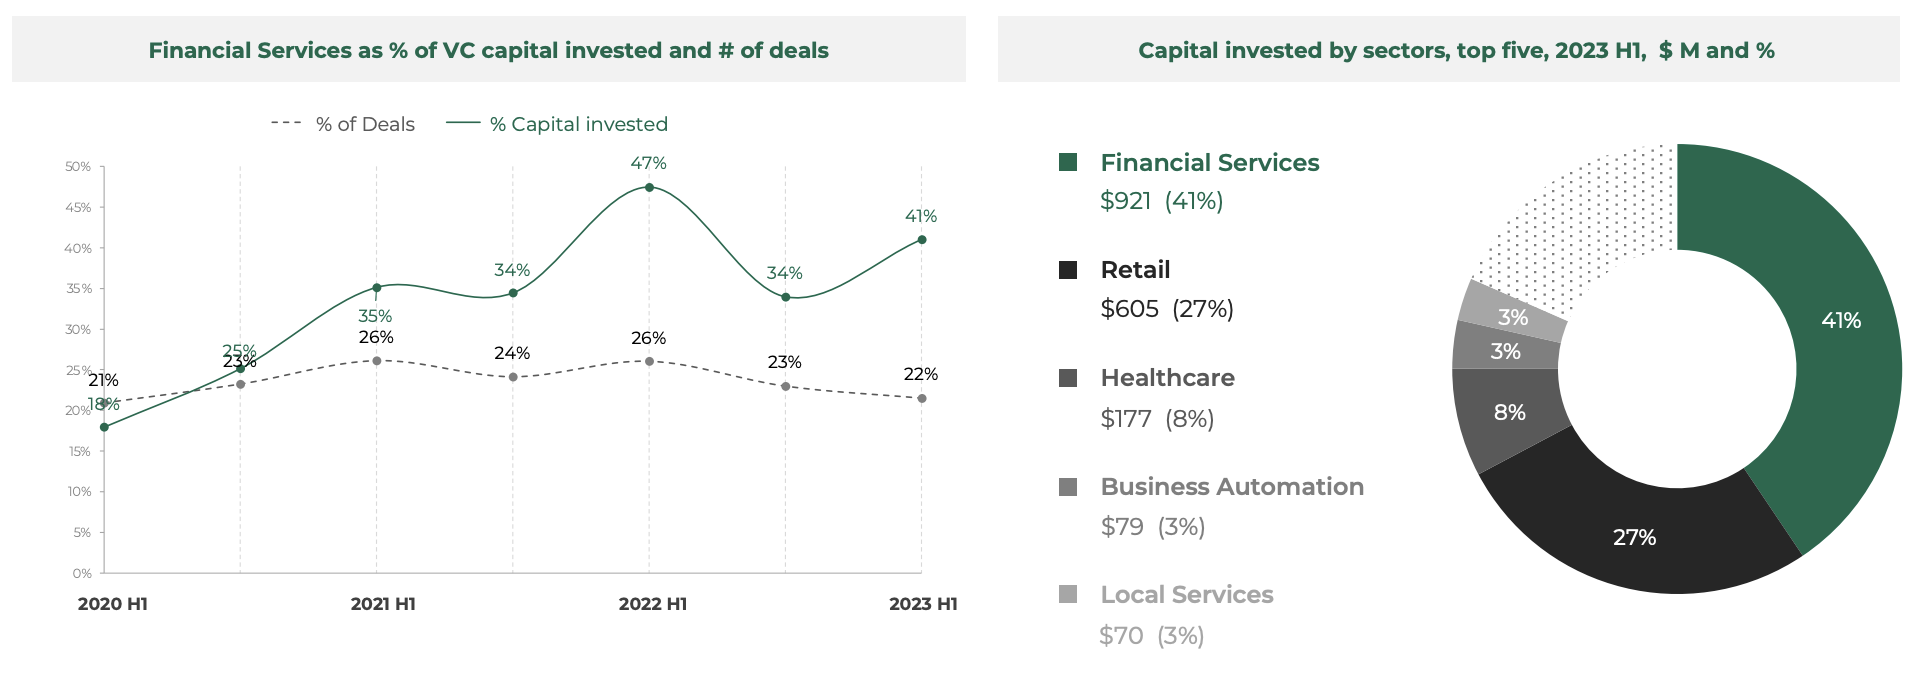 Ponderea serviciilor financiare ca % din capitalul de capital de risc investit și numărul de tranzacții, Sursa: Southeast Asia Tech Investment 2023 S1, Cento Ventures, decembrie 2023